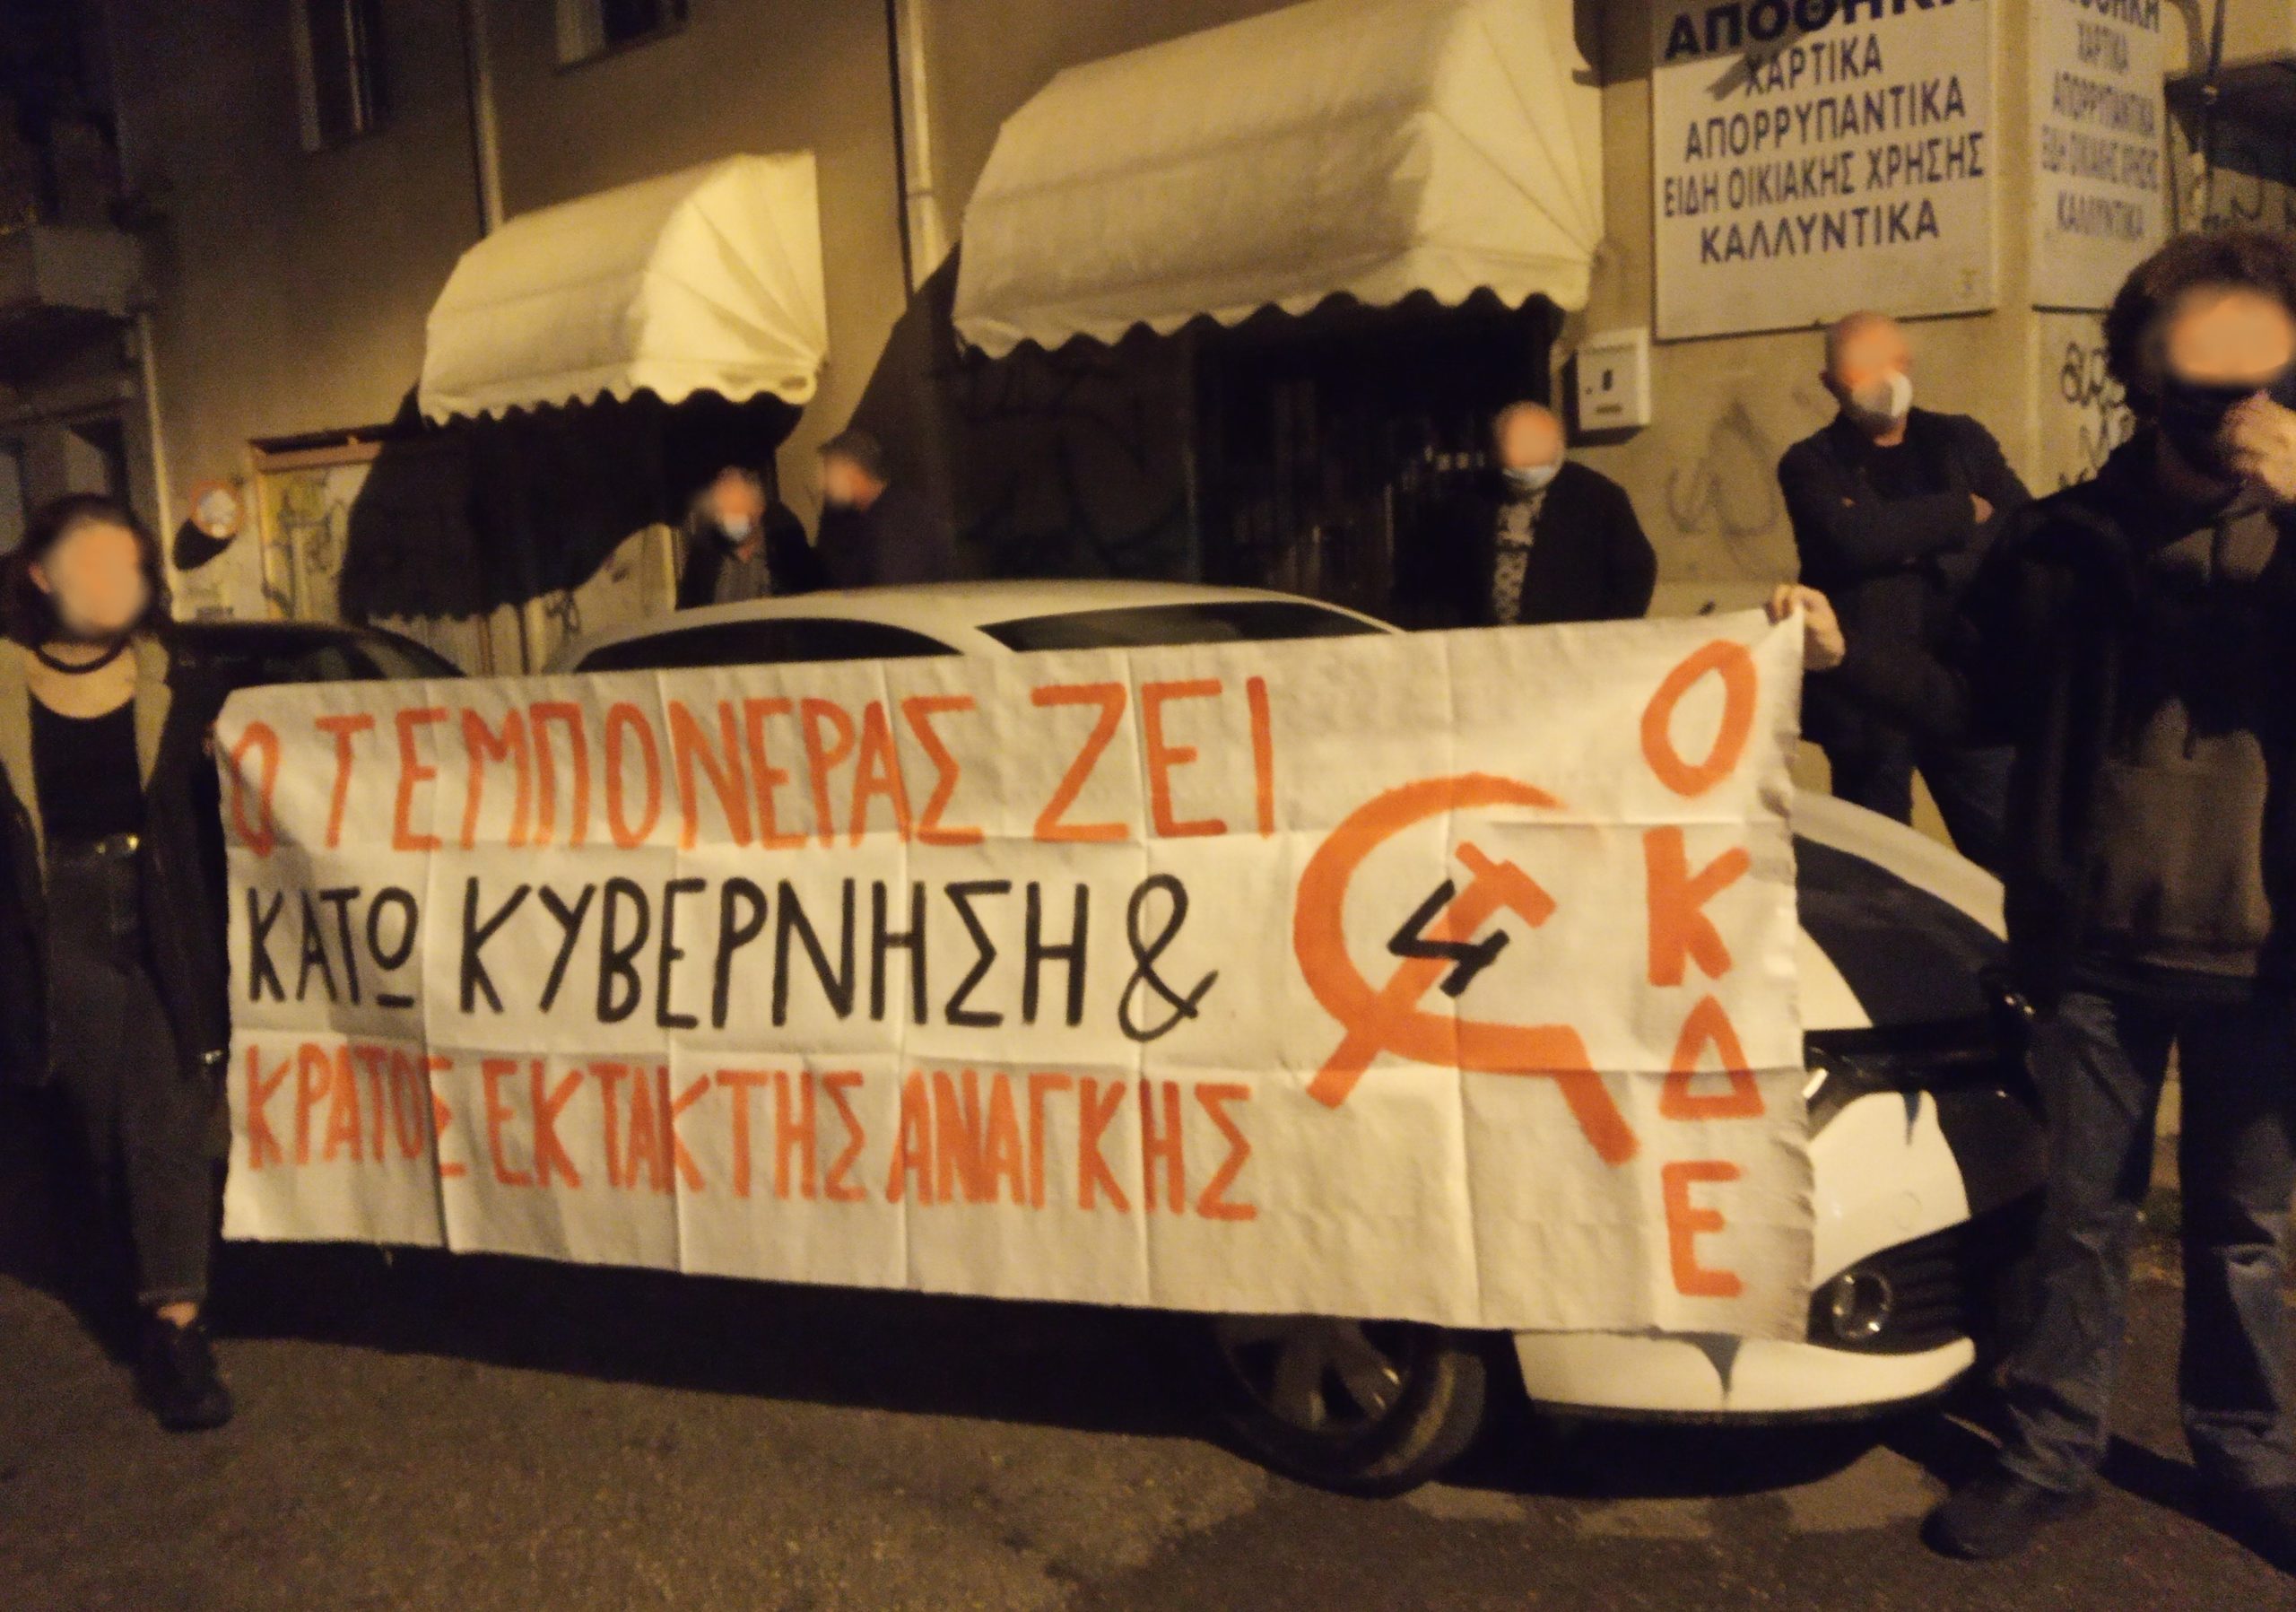 Διαδήλωση στην Πάτρα για τα 30 χρόνια απο τη δολοφονία του Νίκου Τεμπονέρα